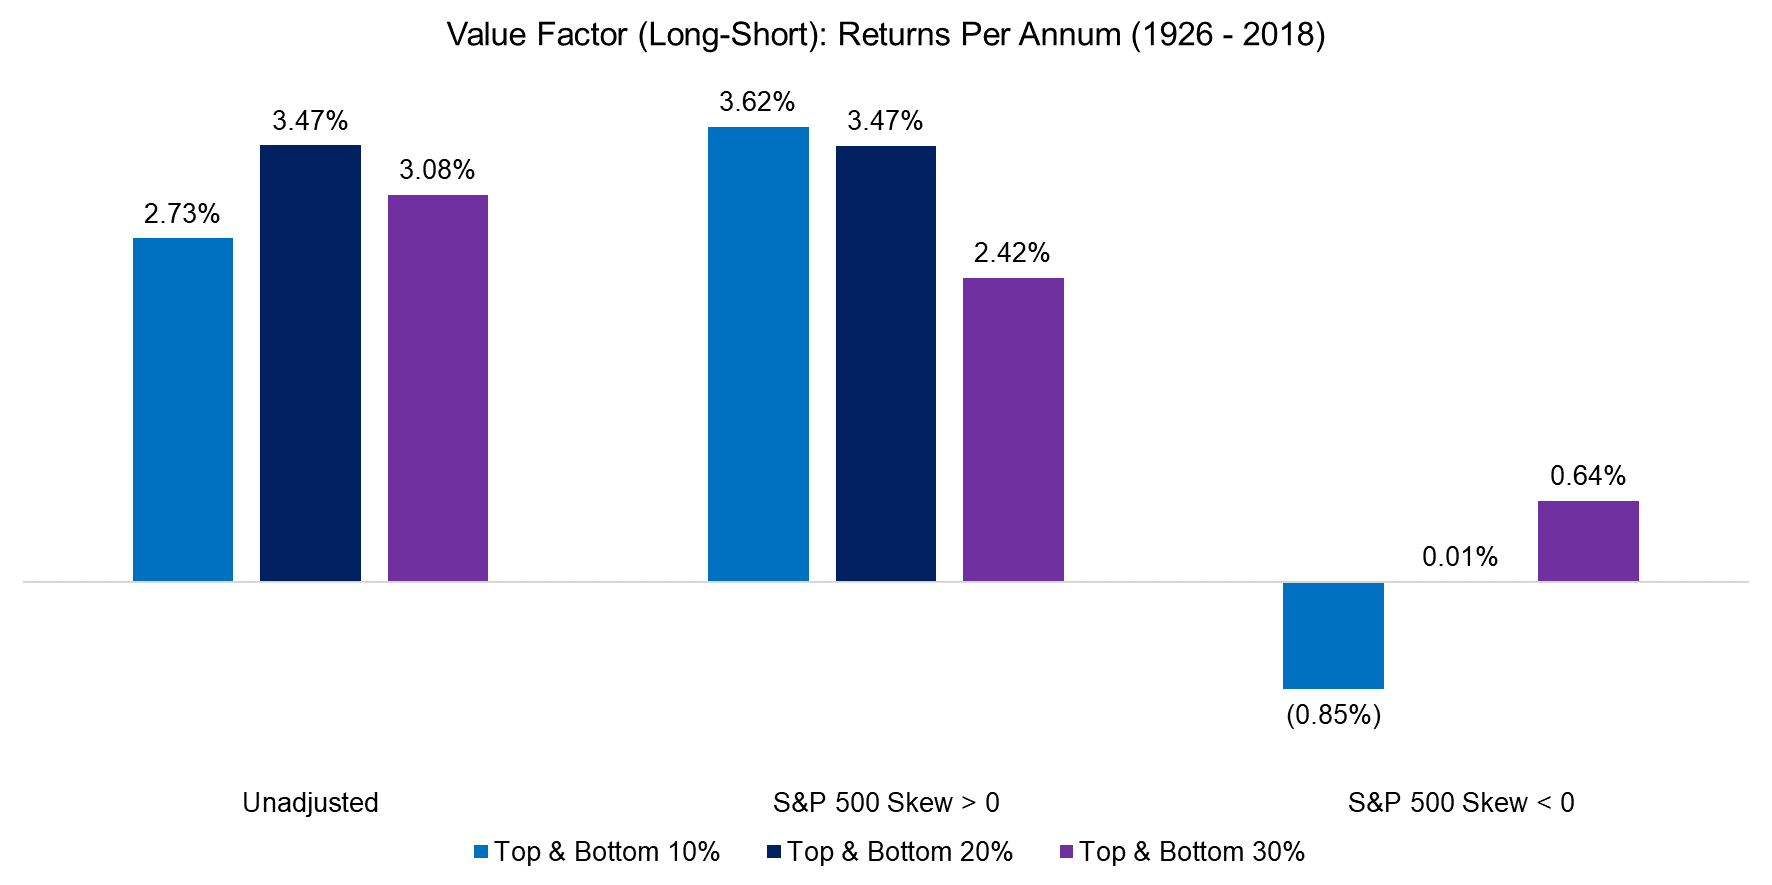 Value Factor (Long-Short) Returns Per Annum (1926 - 2018)